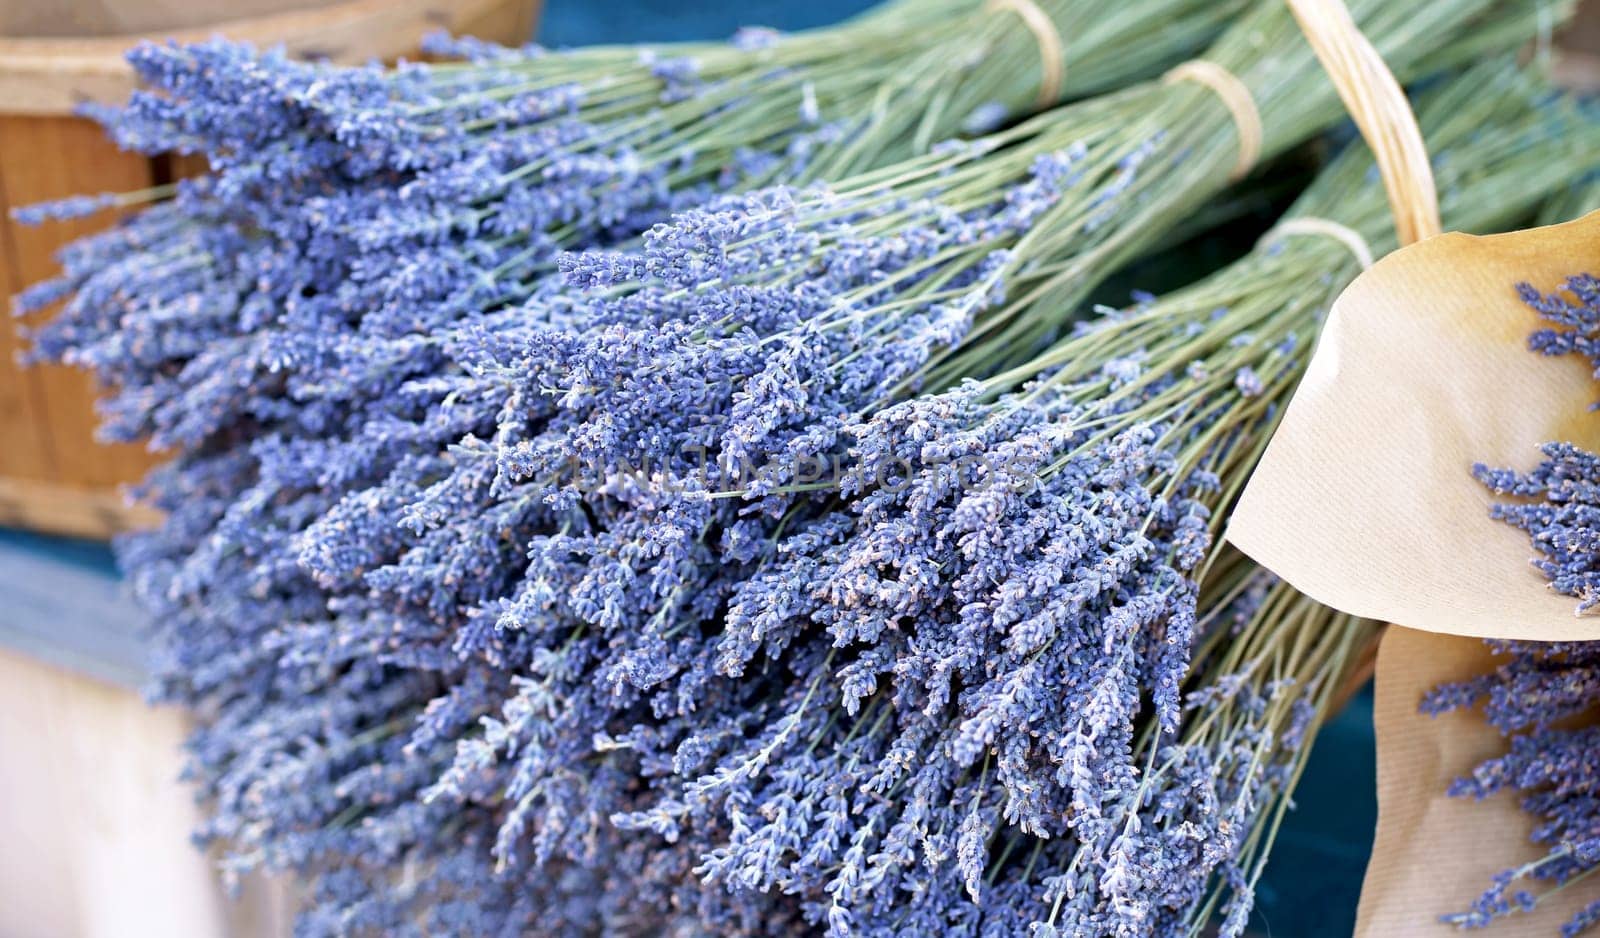 France Nice market. Dry lavender for sale